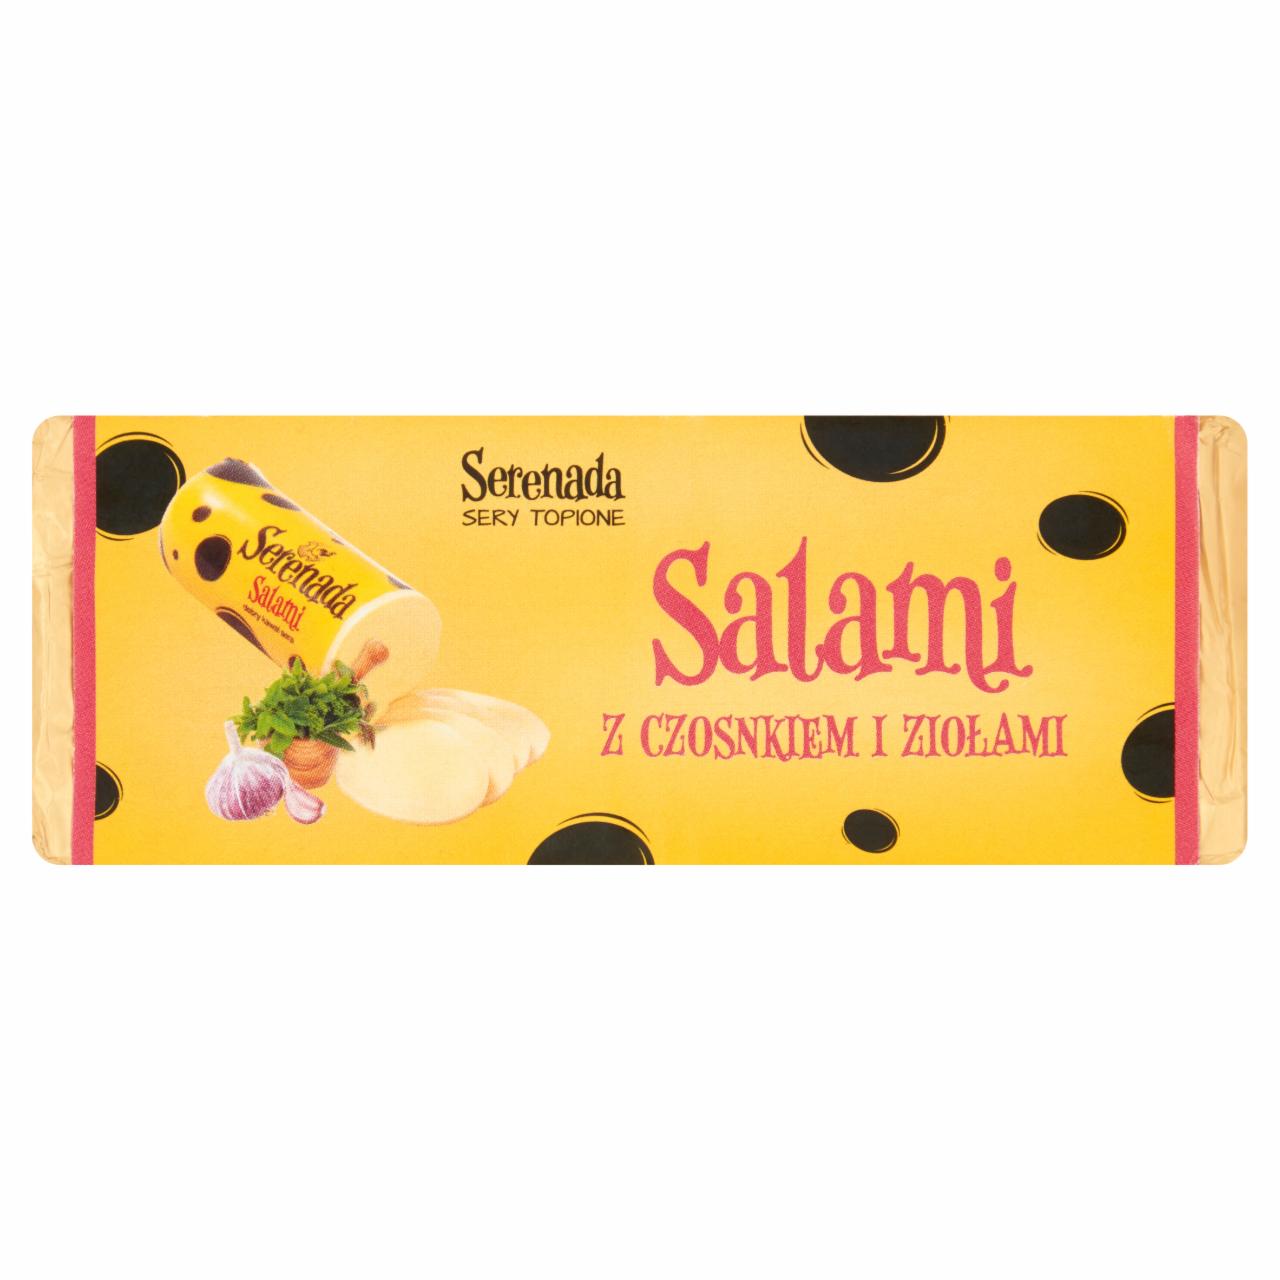 Zdjęcia - Serenada Ser topiony Salami z czosnkiem i ziołami 100 g